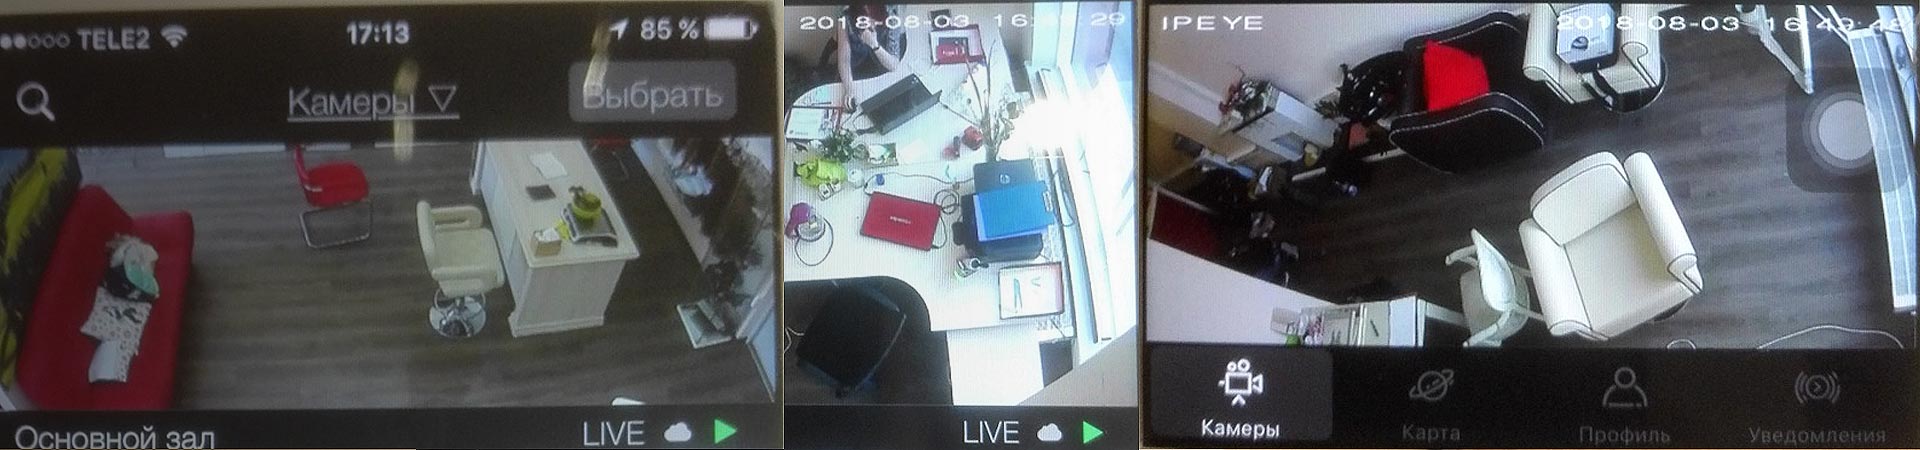 Установка скрытого (миниатюрного) видеонаблюдения в квартире